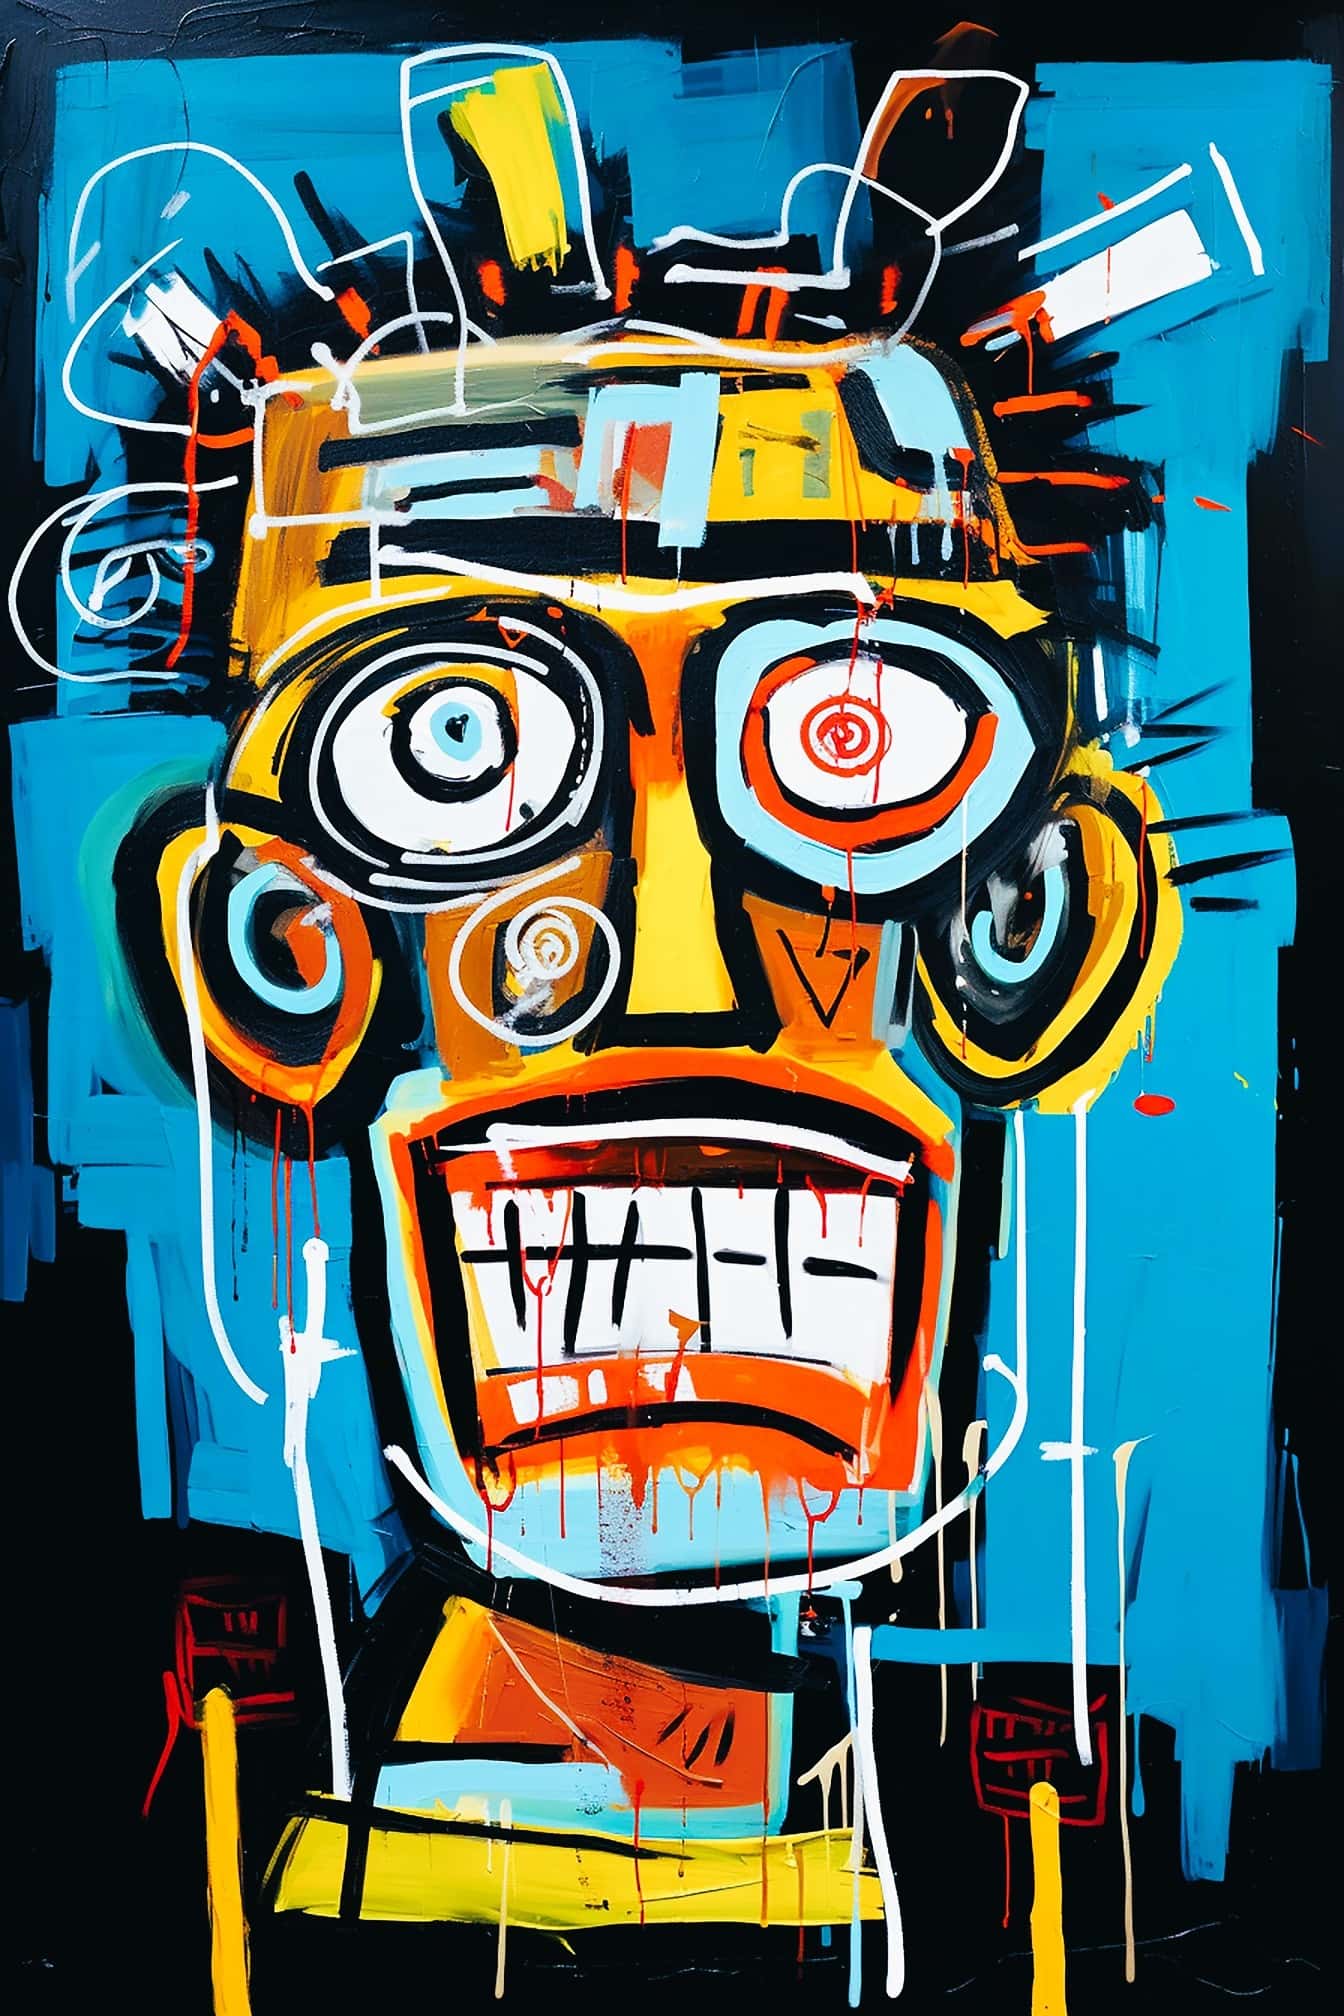 Apstraktna grunge portretna ilustracija narančastožute žute glave i očiju